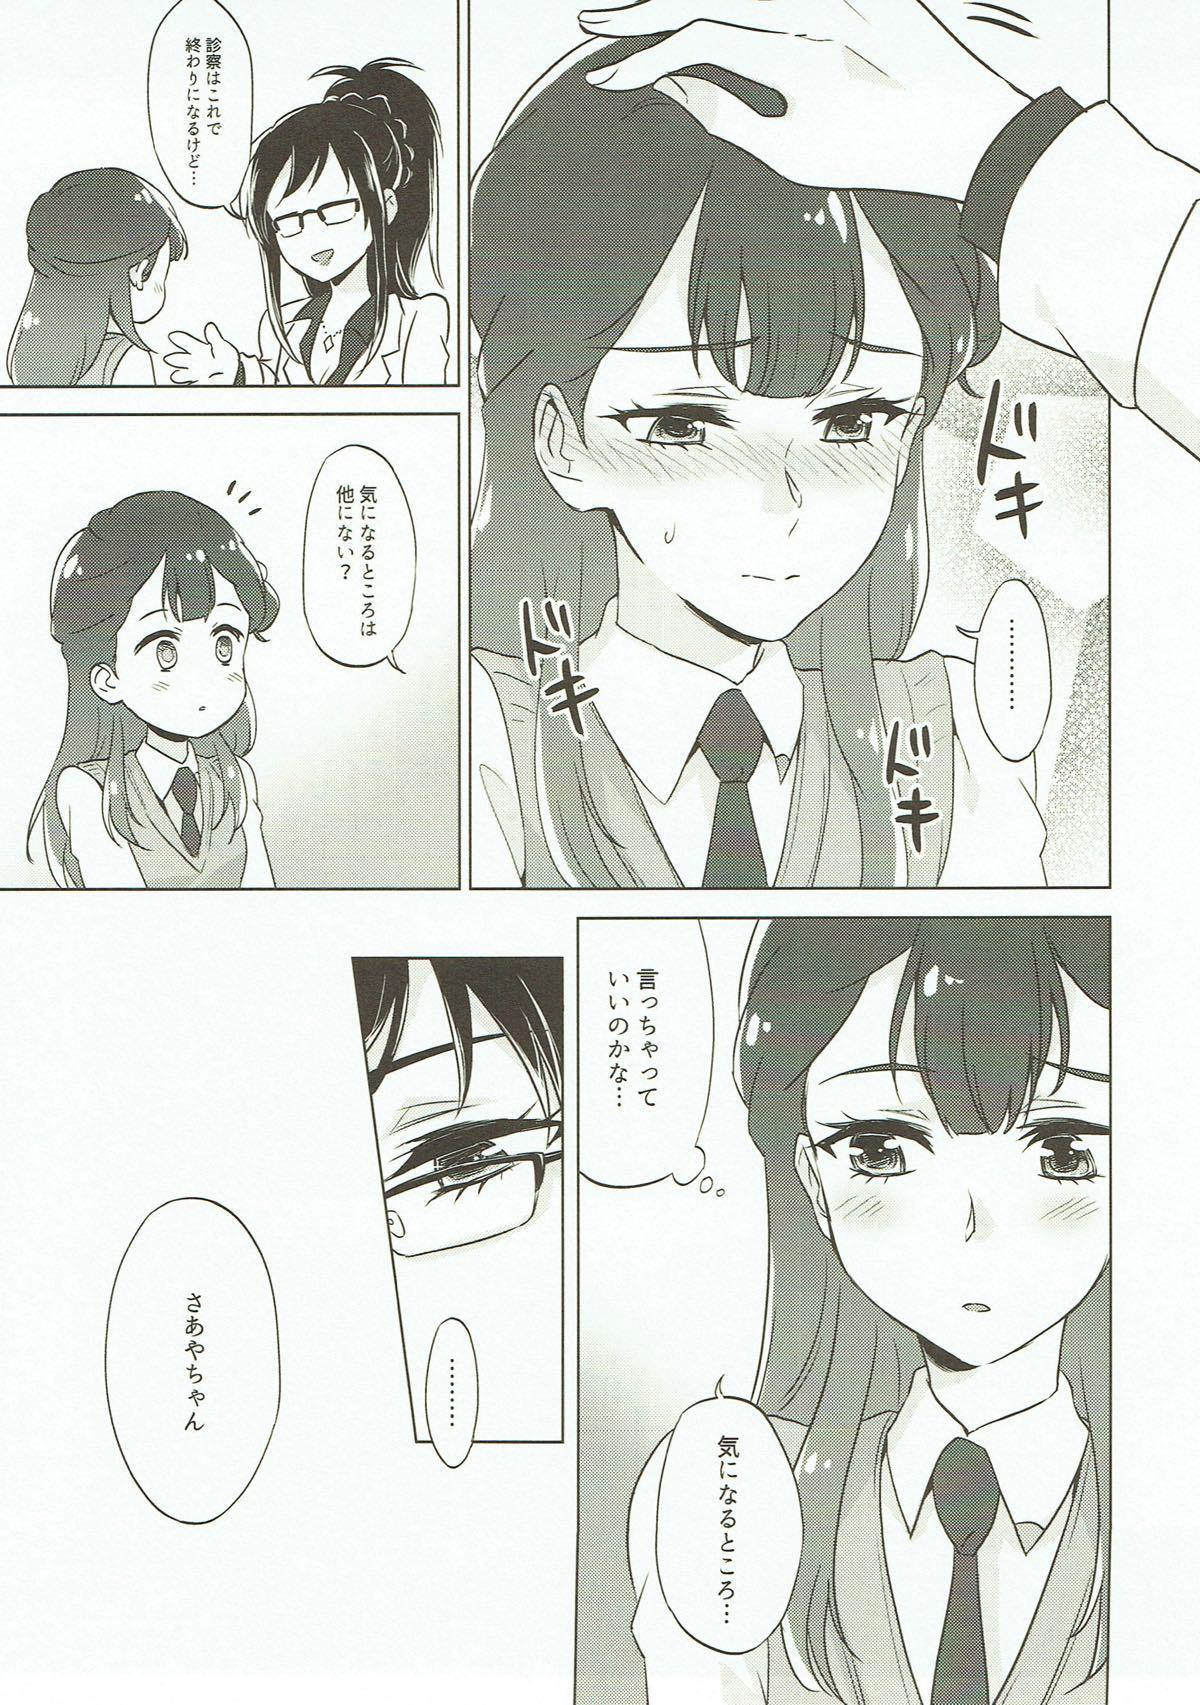 She Tenshi no Otoshikata - Dokidoki precure Hugtto precure Ex Girlfriends - Page 5